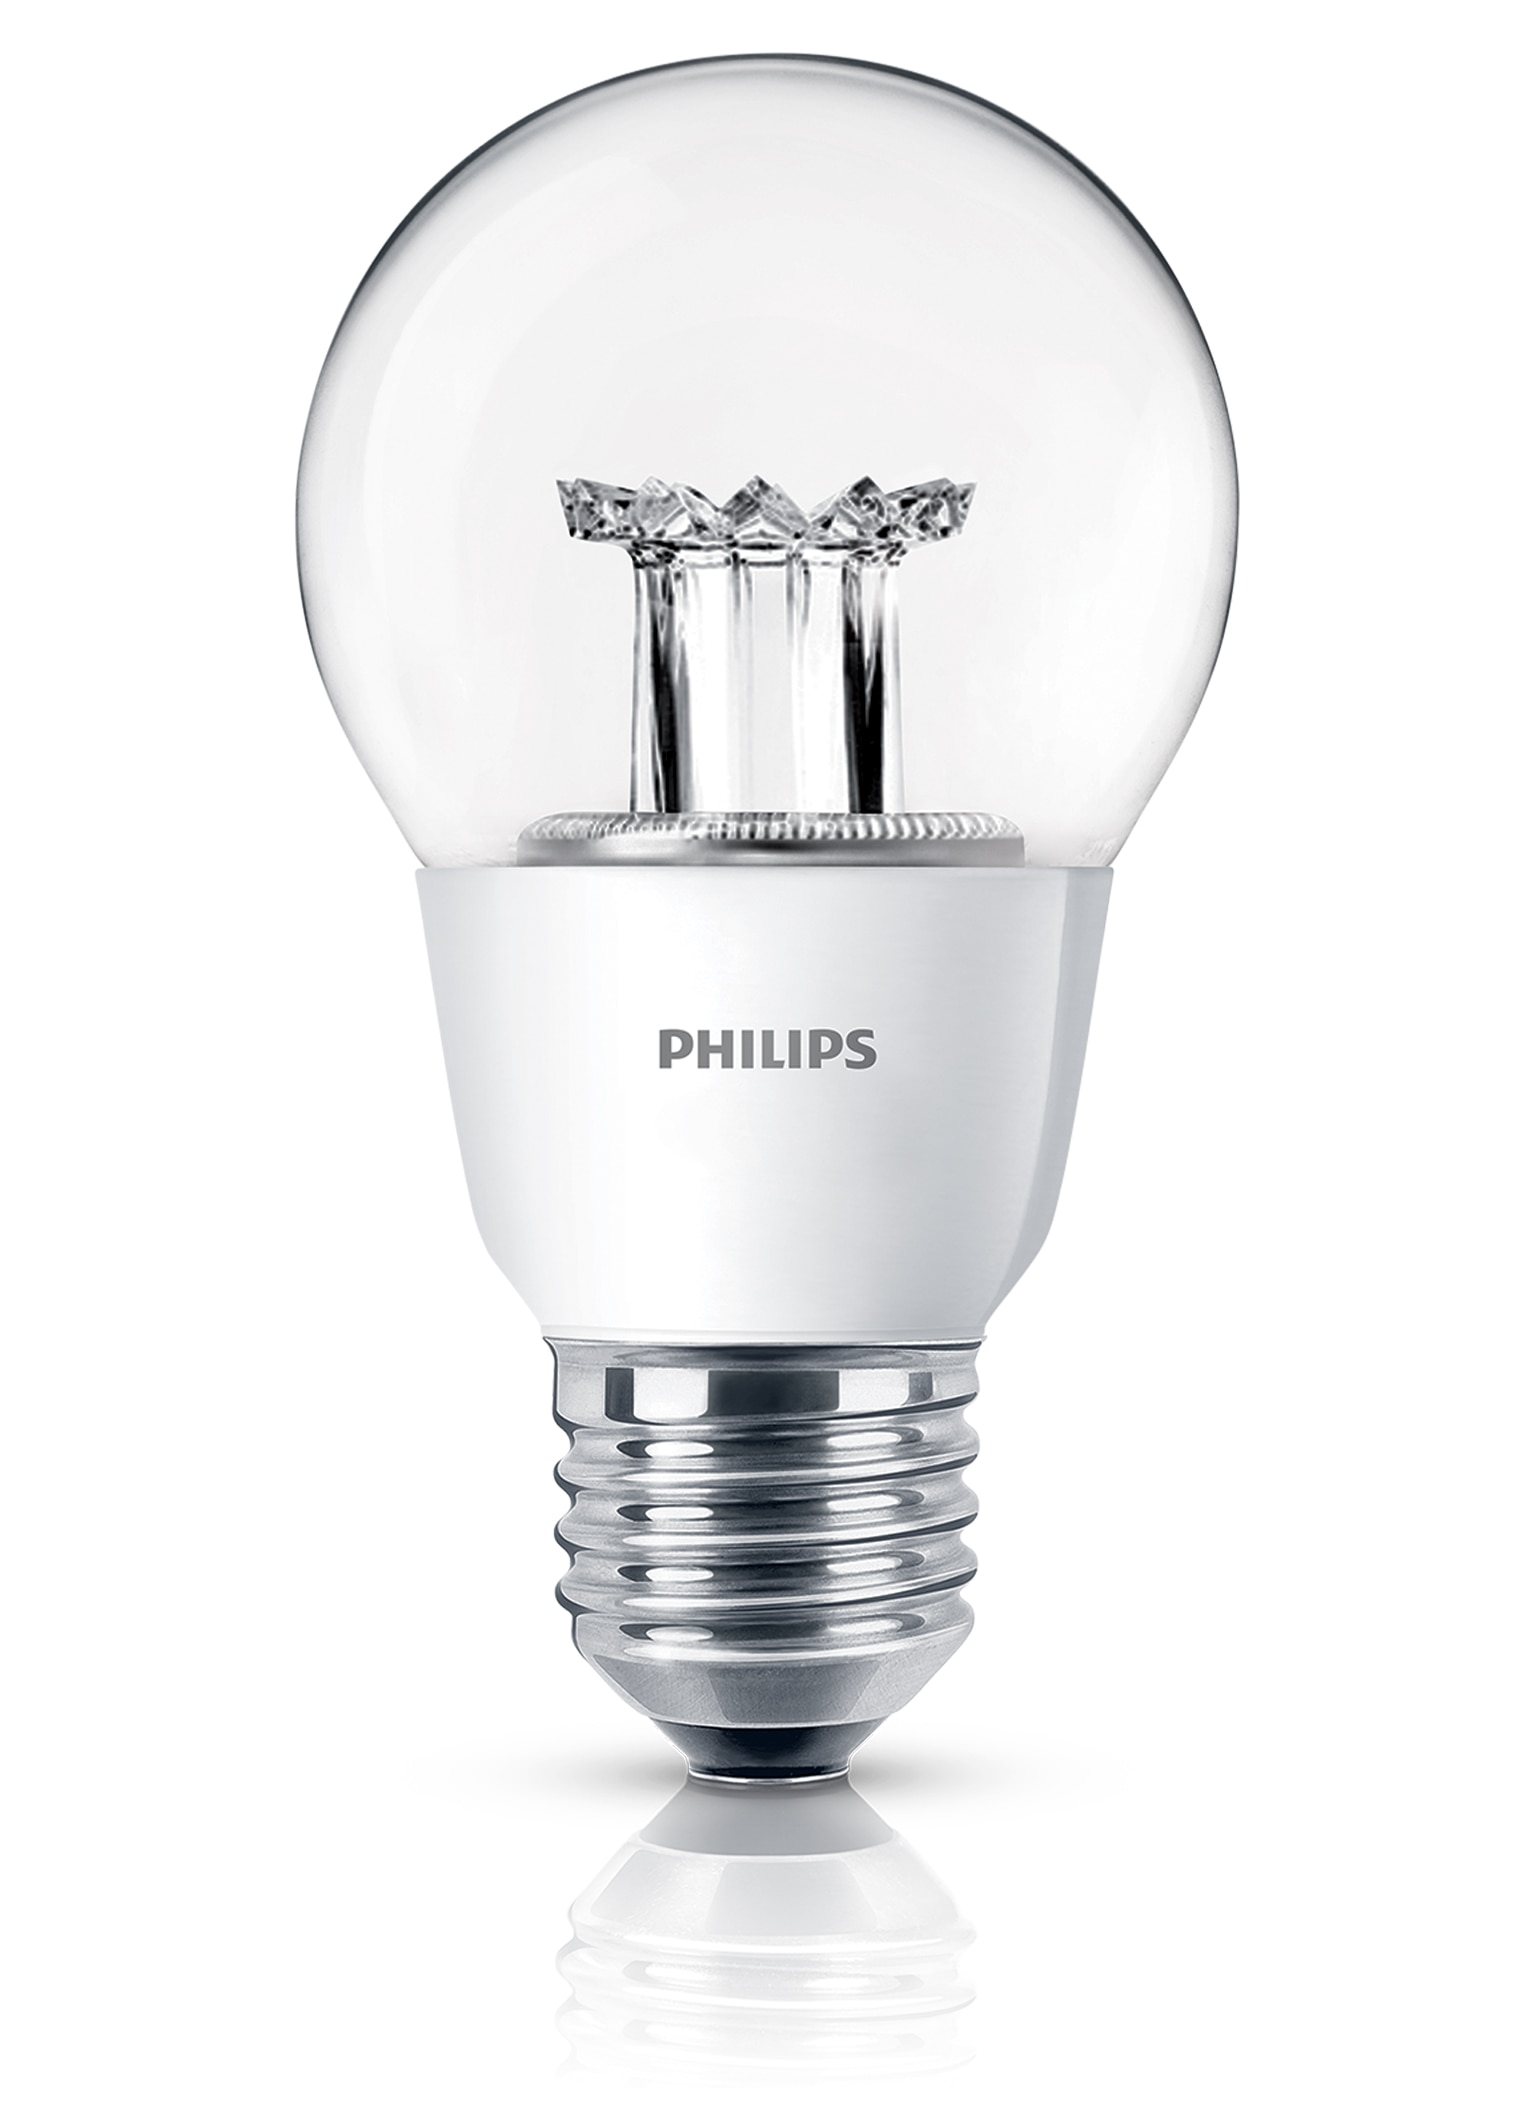 Lampe Philips MASTER LED dans la forme d'une lampe incandescente